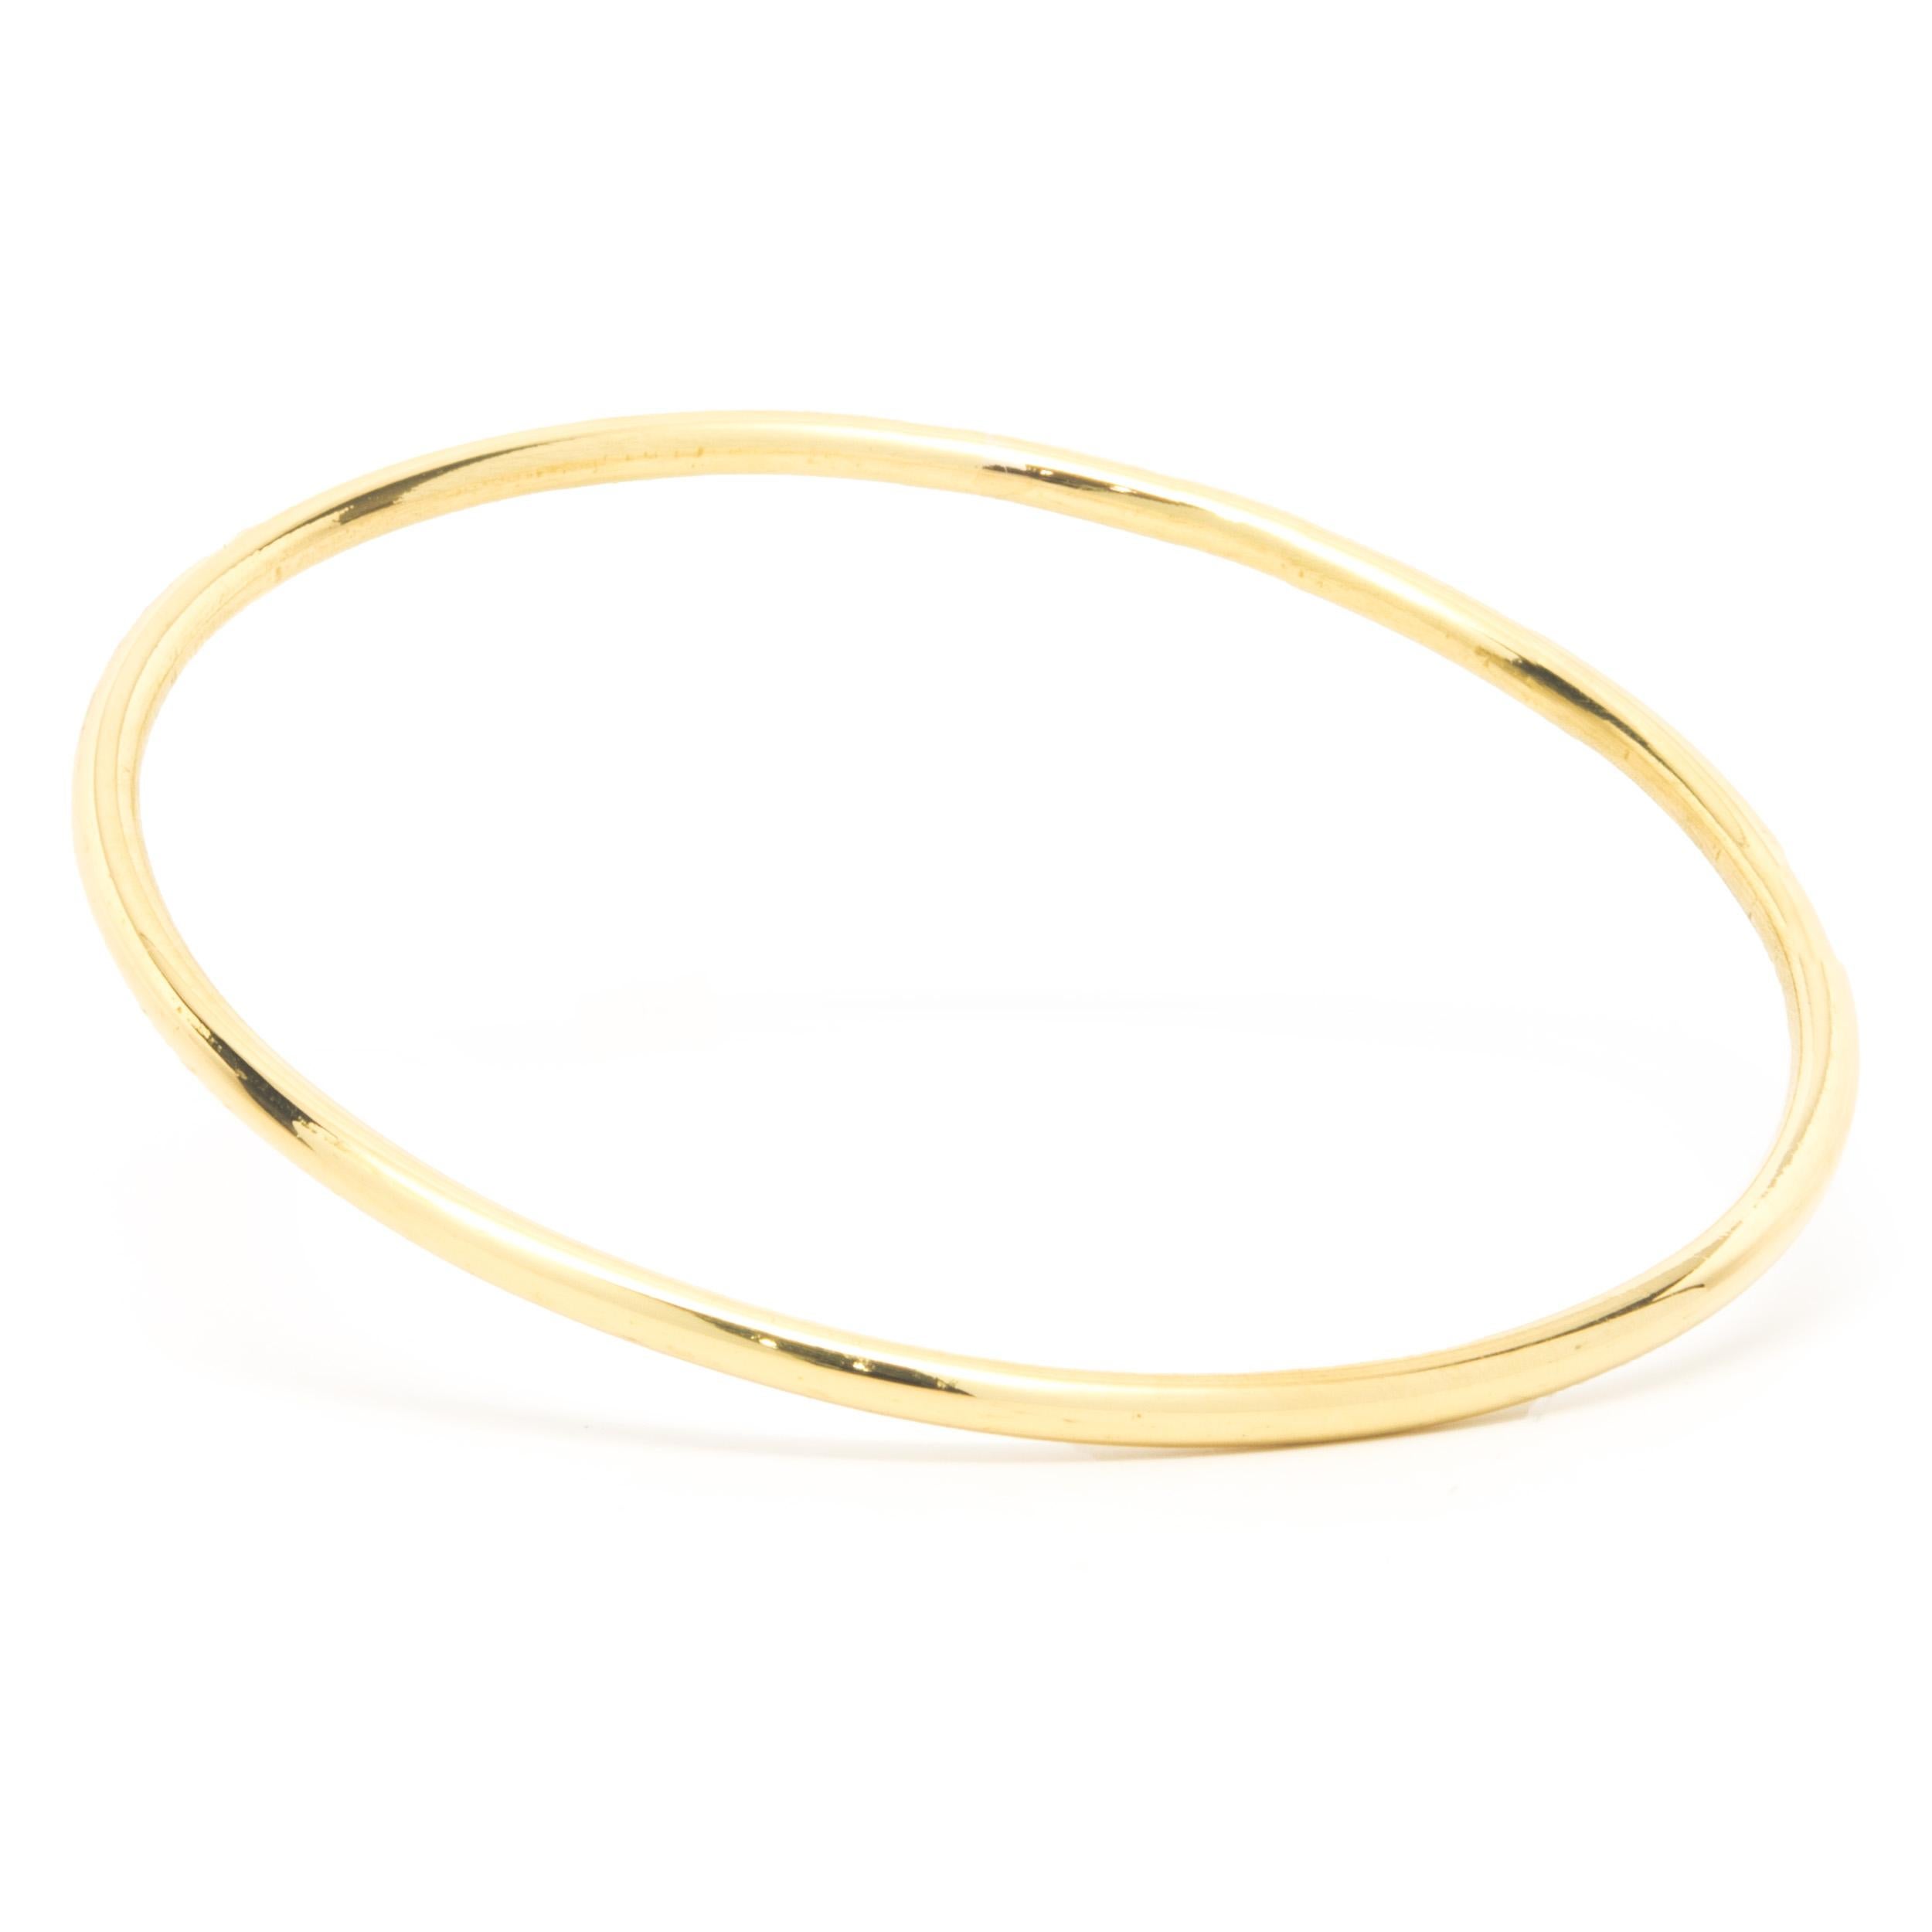 Matériau : Or jaune 18K
Dimensions : le bracelet convient à un poignet de 7.5 pouces maximum.
Poids : 20,94 grammes